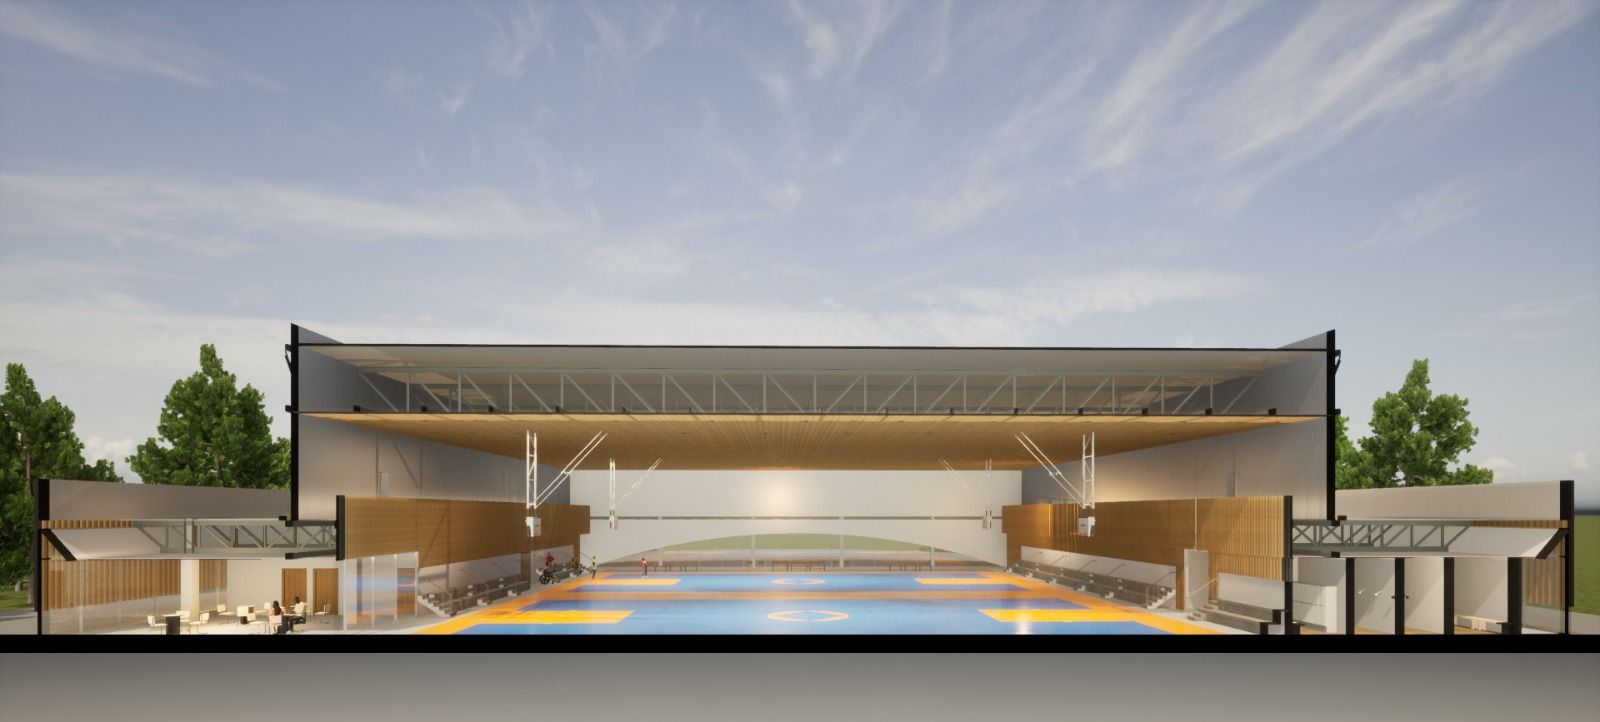 Pabellón deportivo en Tómbola: así es el proyecto de Ayuntamiento de Alicante